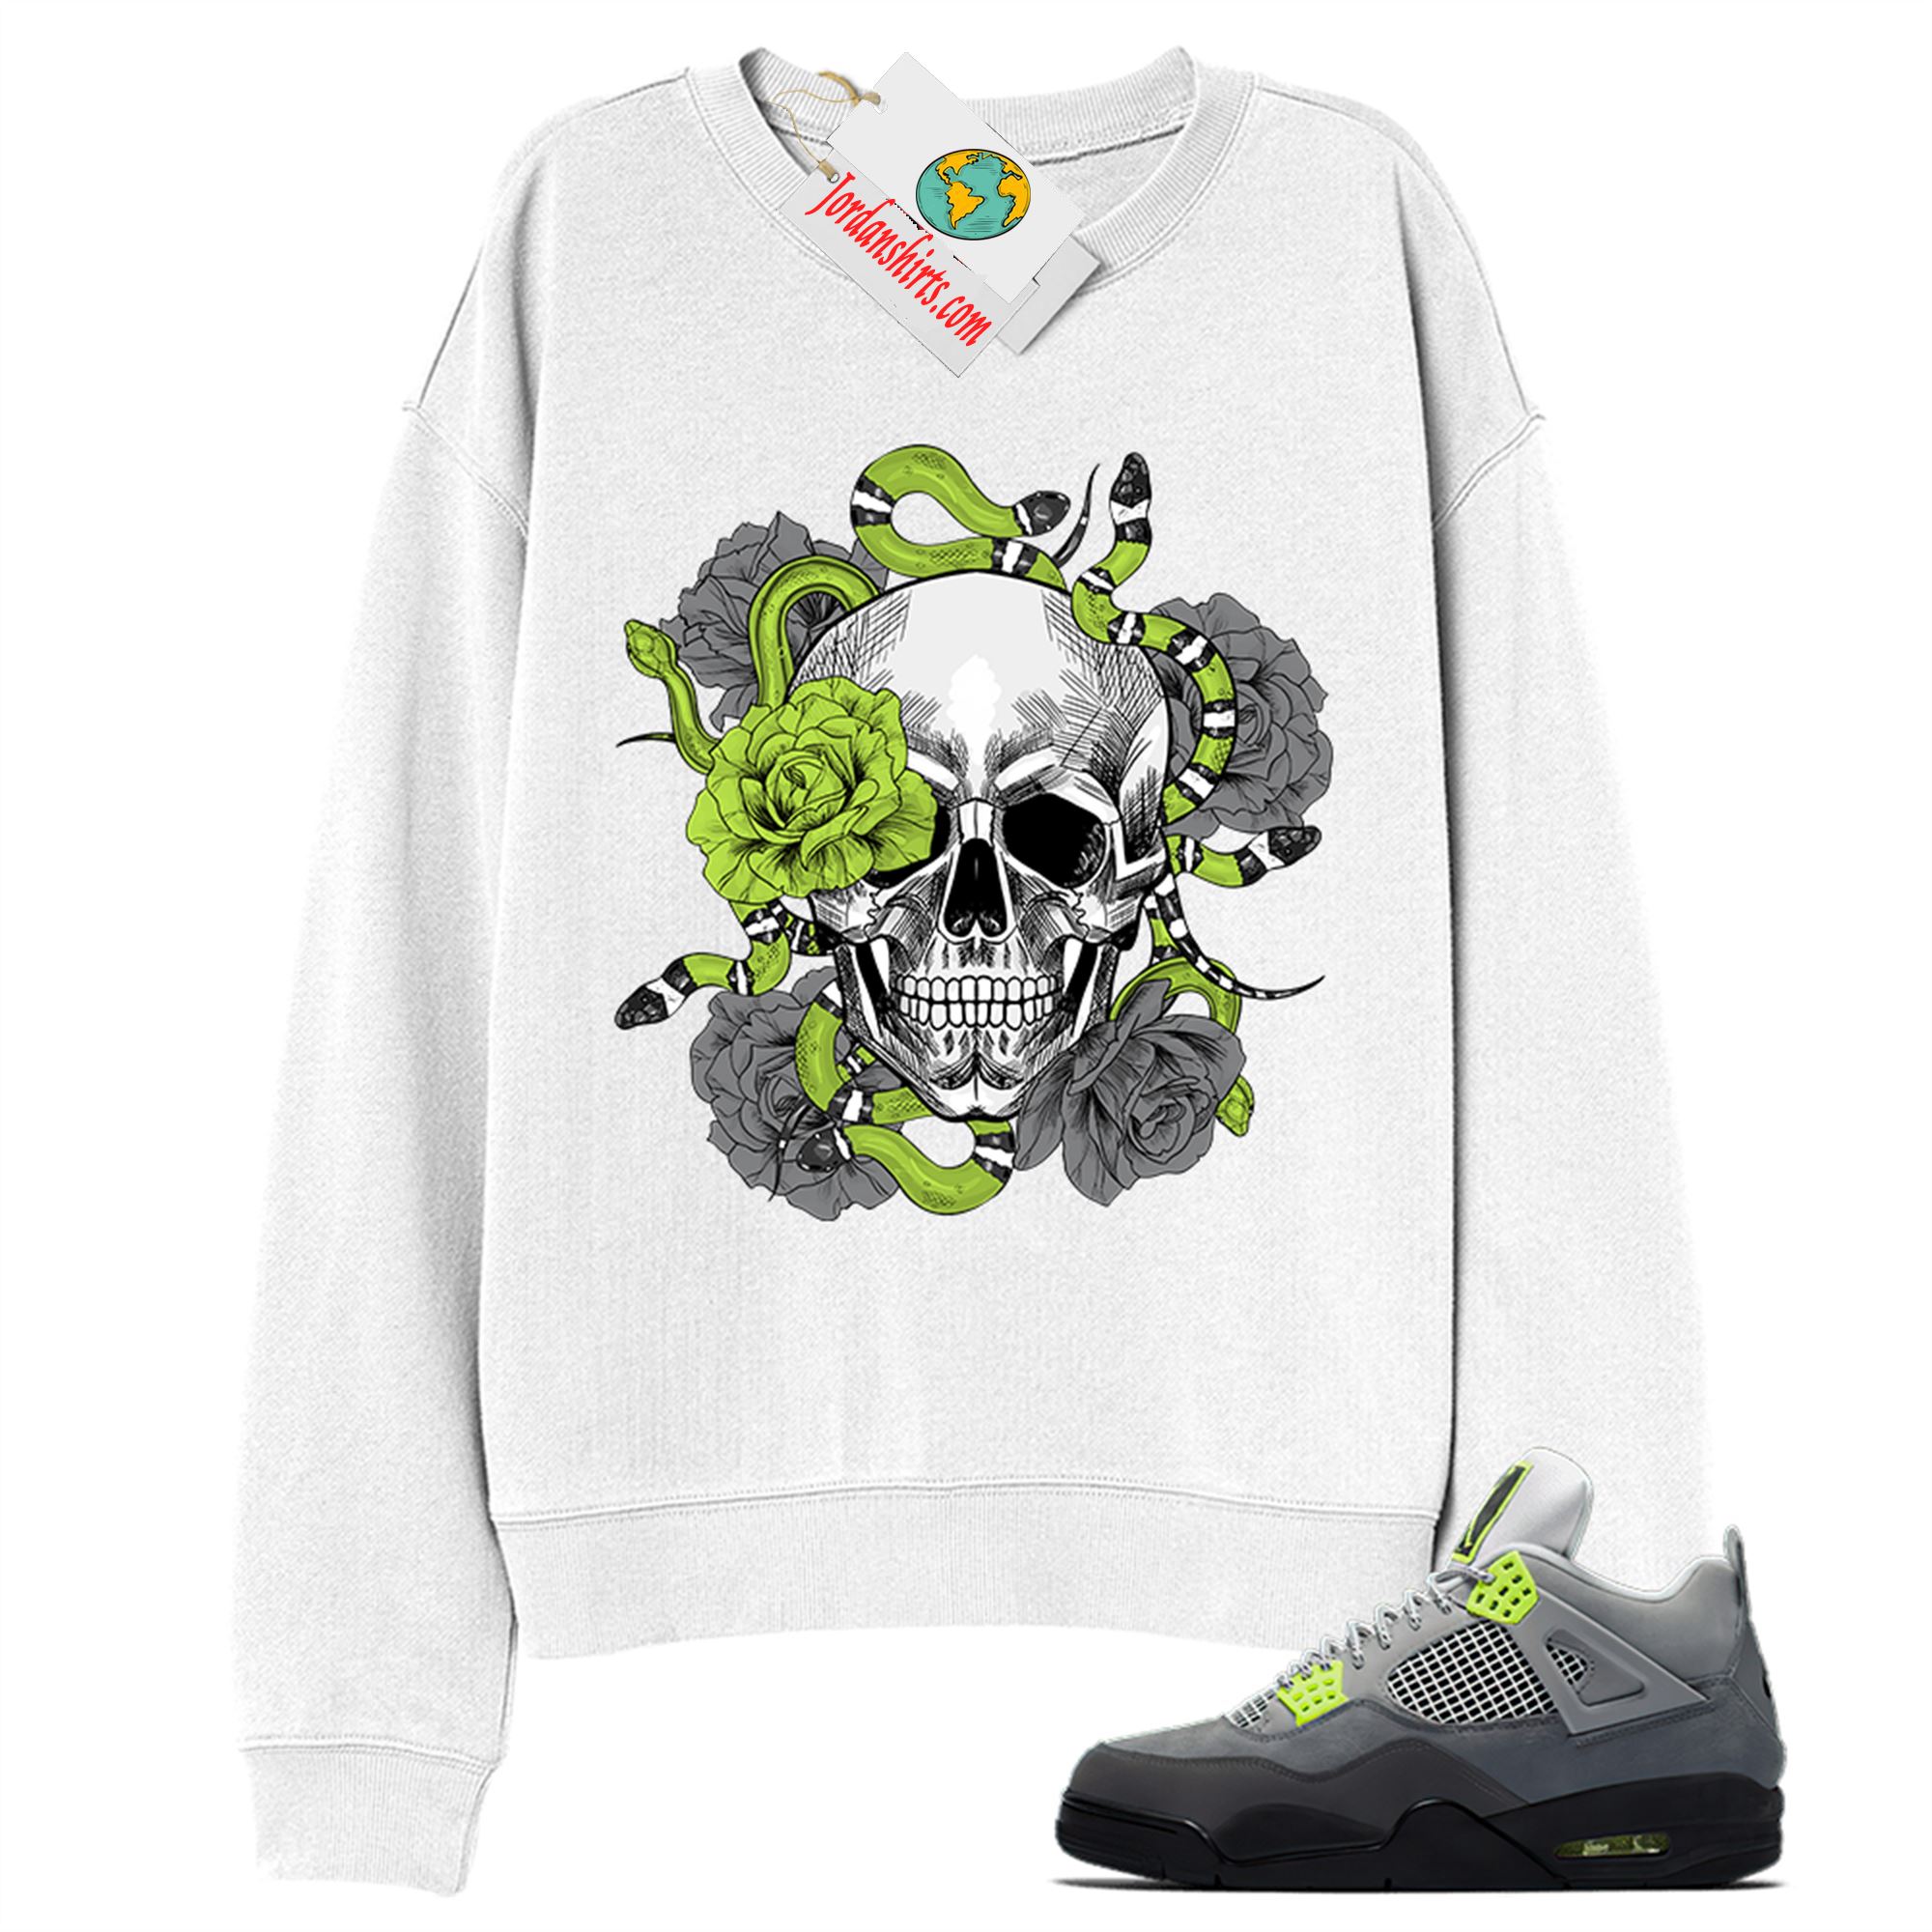 Jordan 4 Sweatshirt, Snake Skull Rose White Sweatshirt Air Jordan 4 Neon 95 4s Full Size Up To 5xl